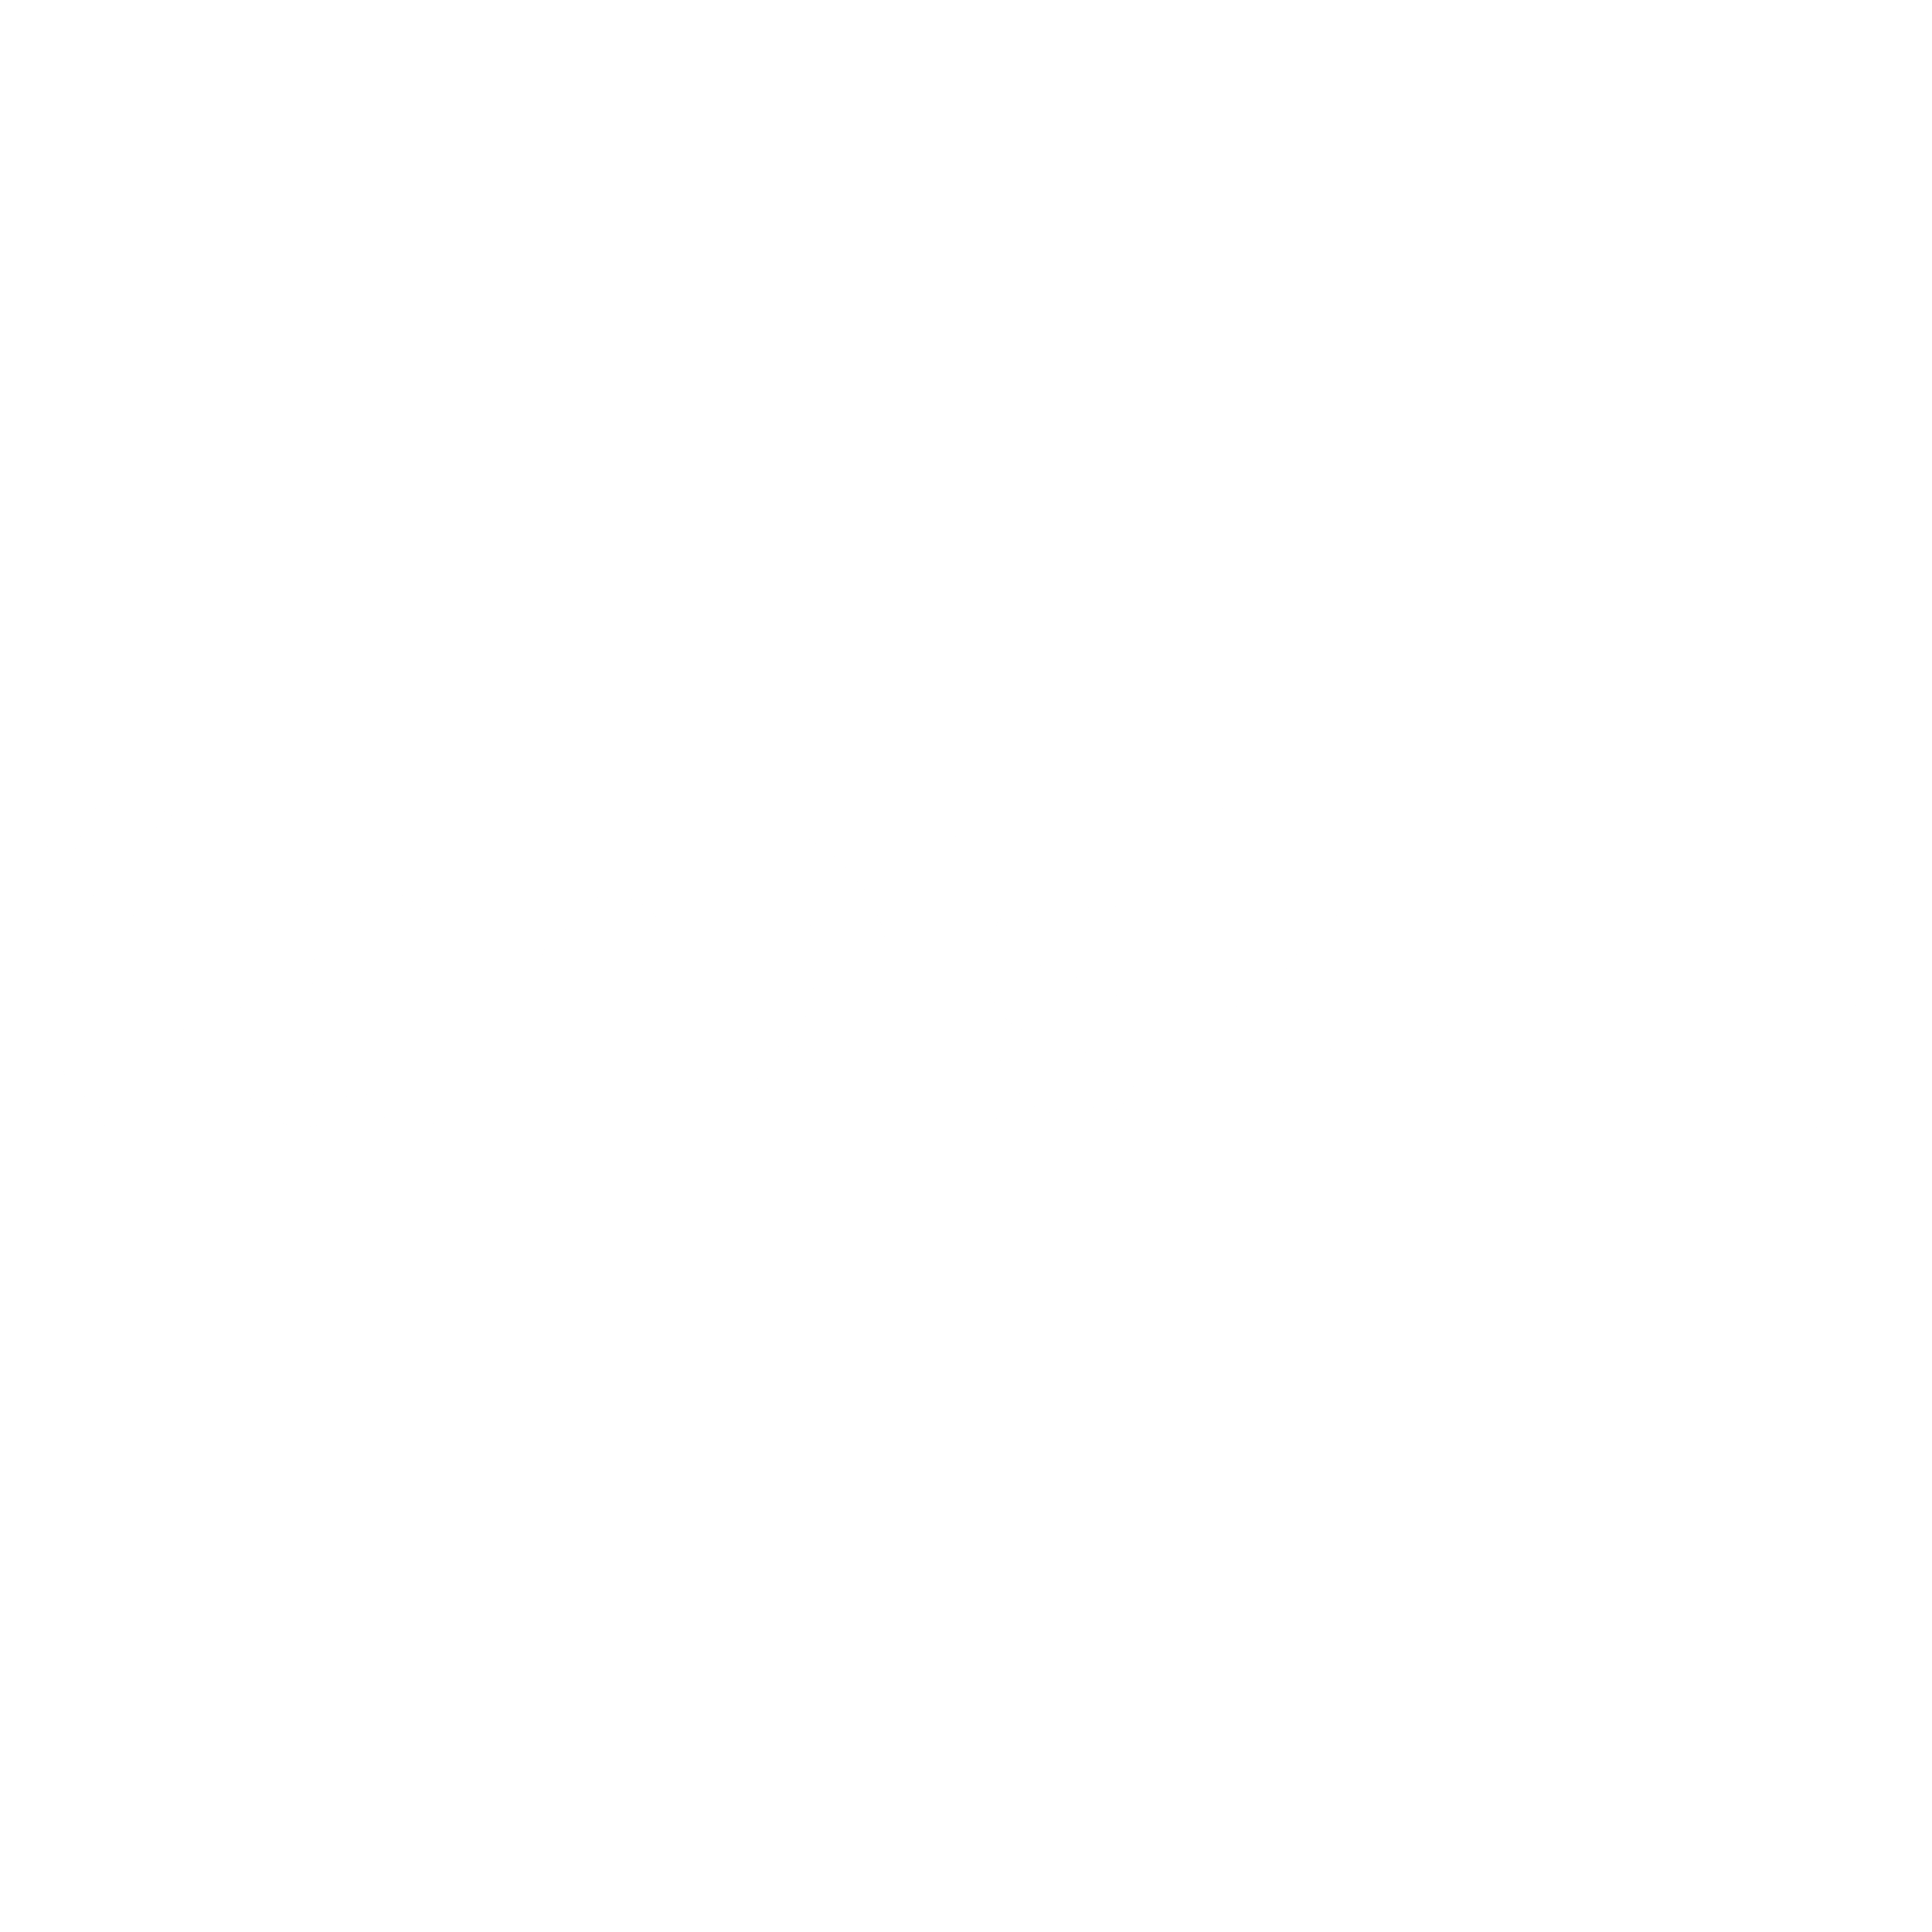 Scandisk Logo - SanDisk Logo PNG Transparent & SVG Vector - Freebie Supply